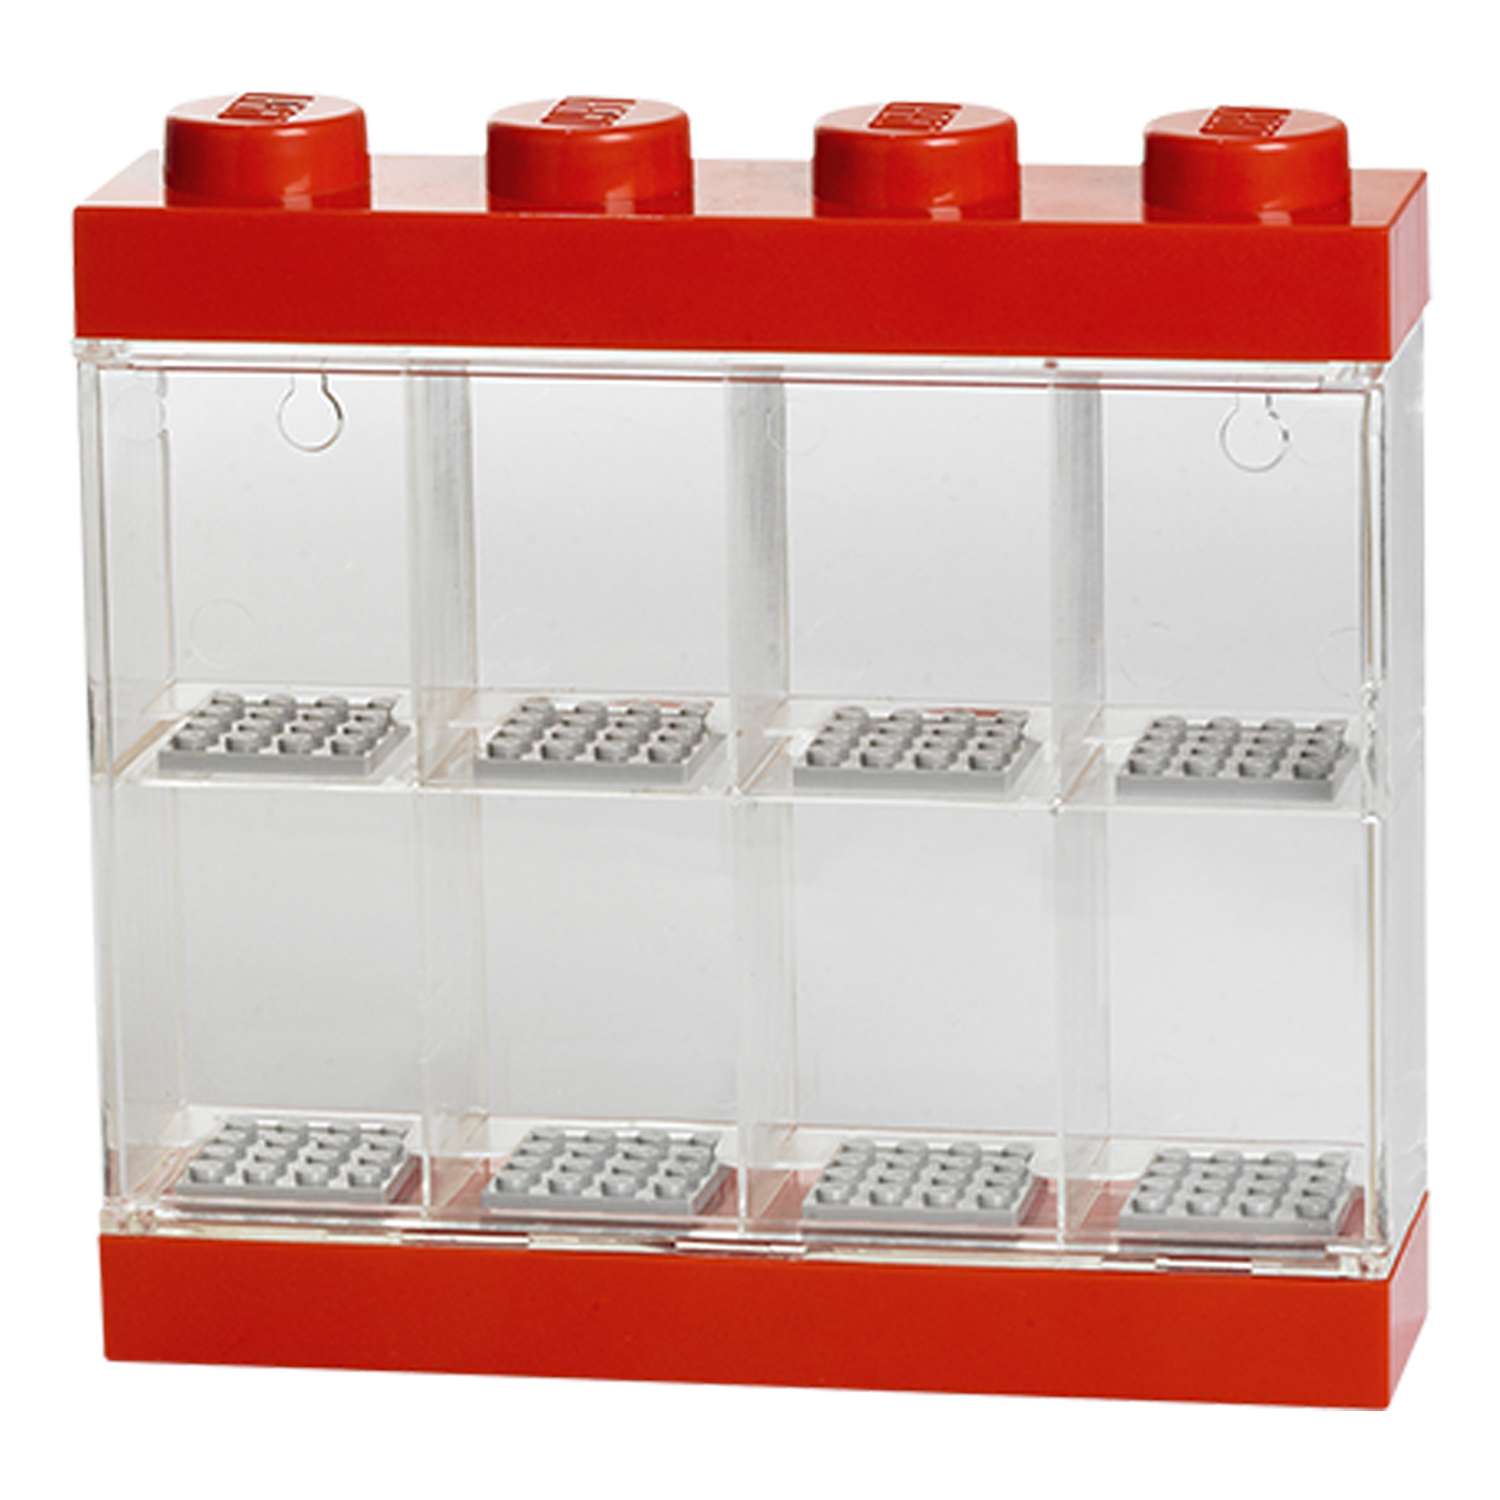 Дисплей для минифигур LEGO 8 шт красный - фото 2